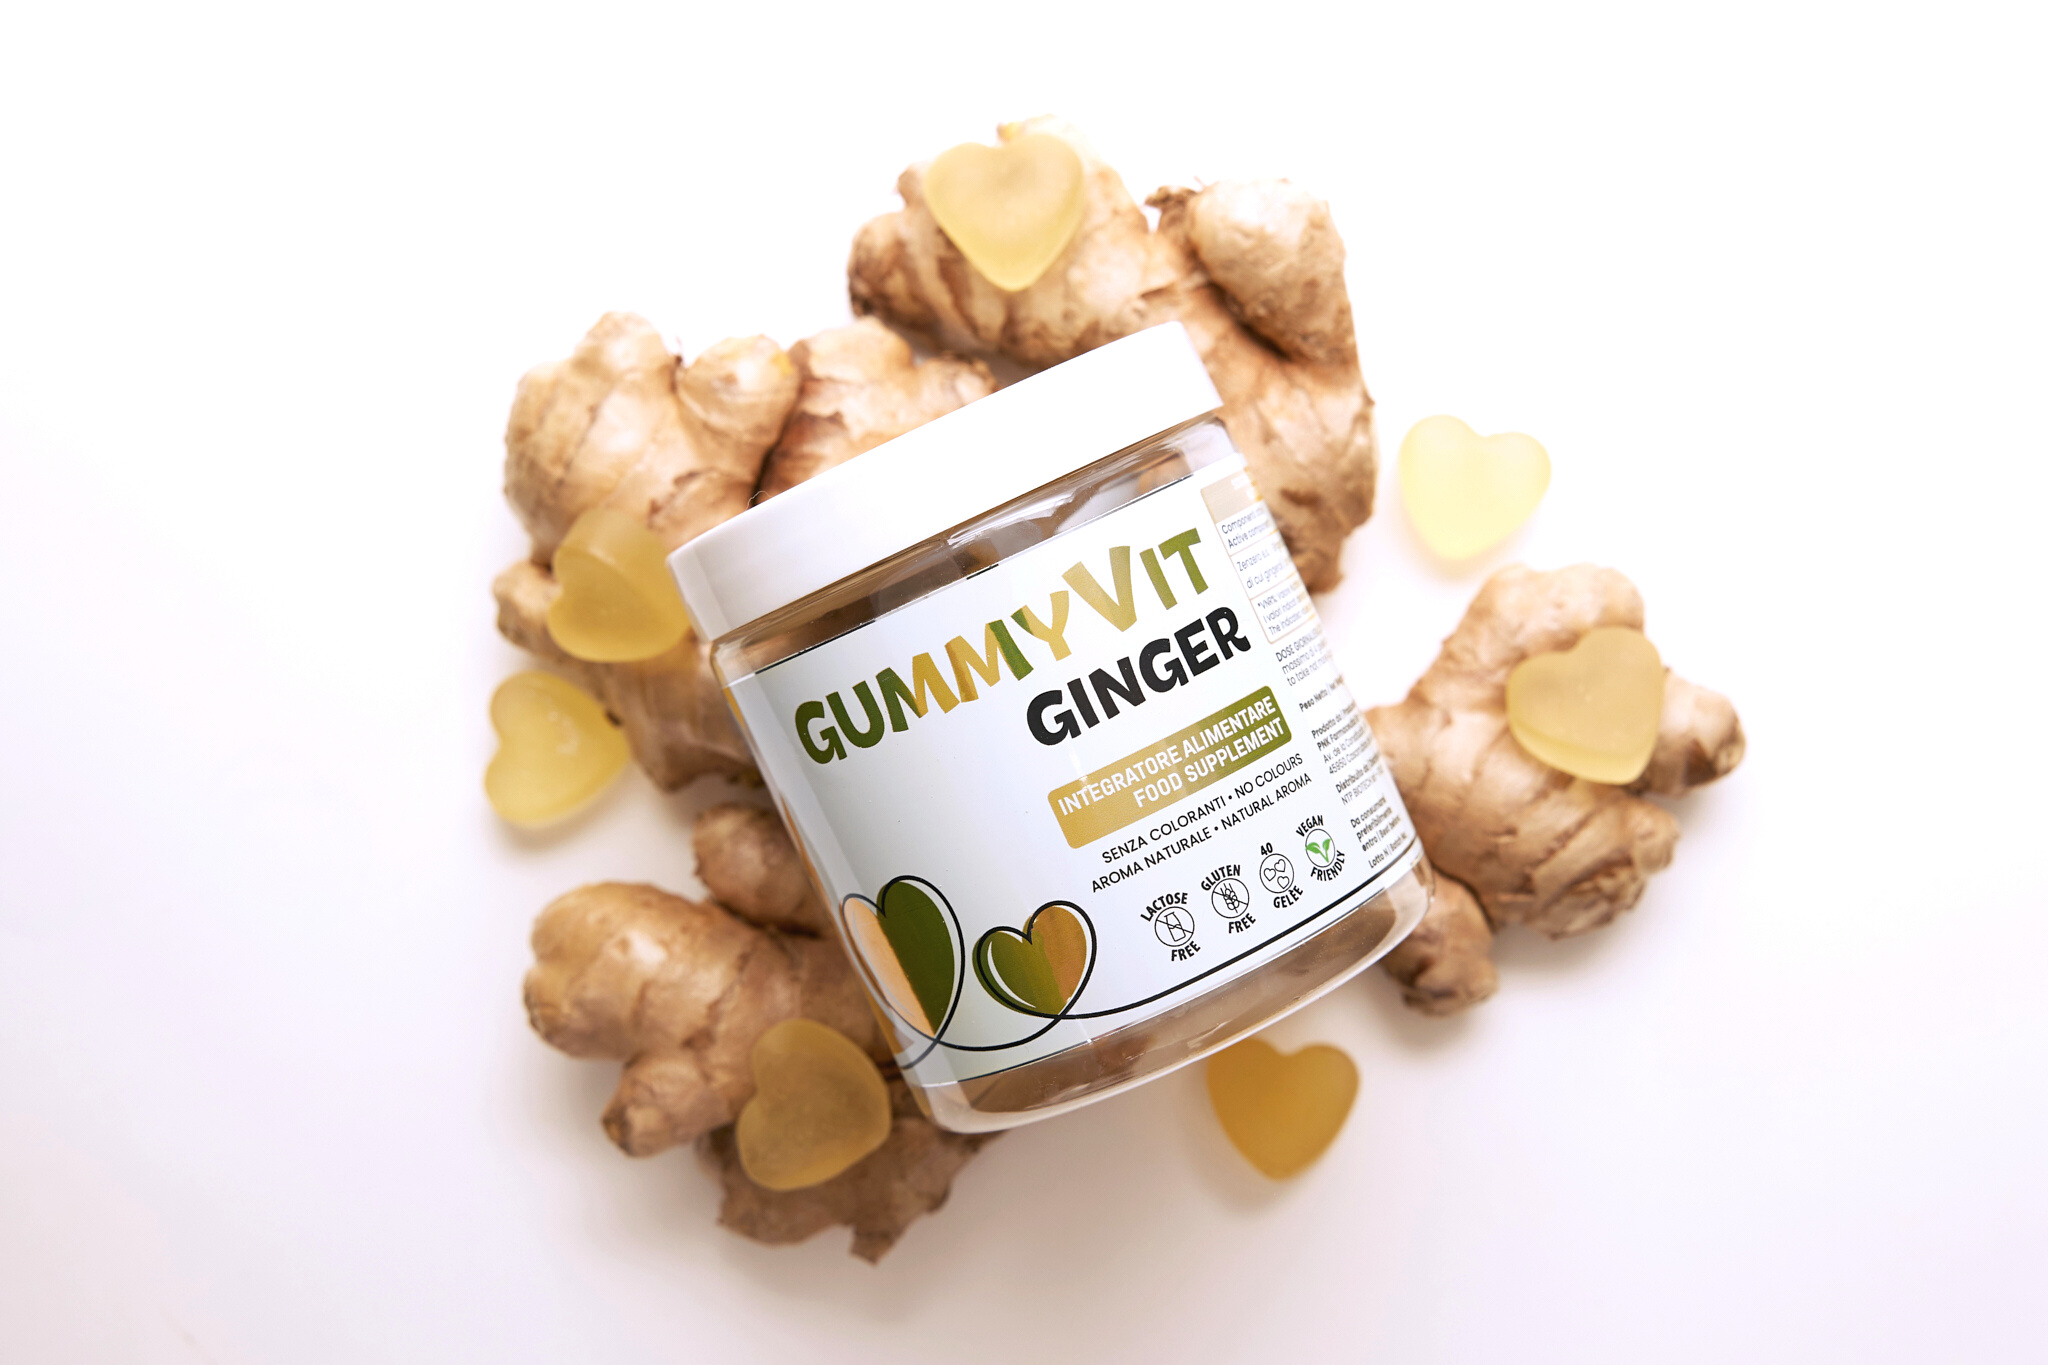 Immagine illustrativa che rappresenta un momento di consumo delle gomme Gummyvit Ginger, suggerendo l'uso in situazioni quotidiane di disagio digestivo o nausea, con un riferimento all'adattabilità in gravidanza e allattamento